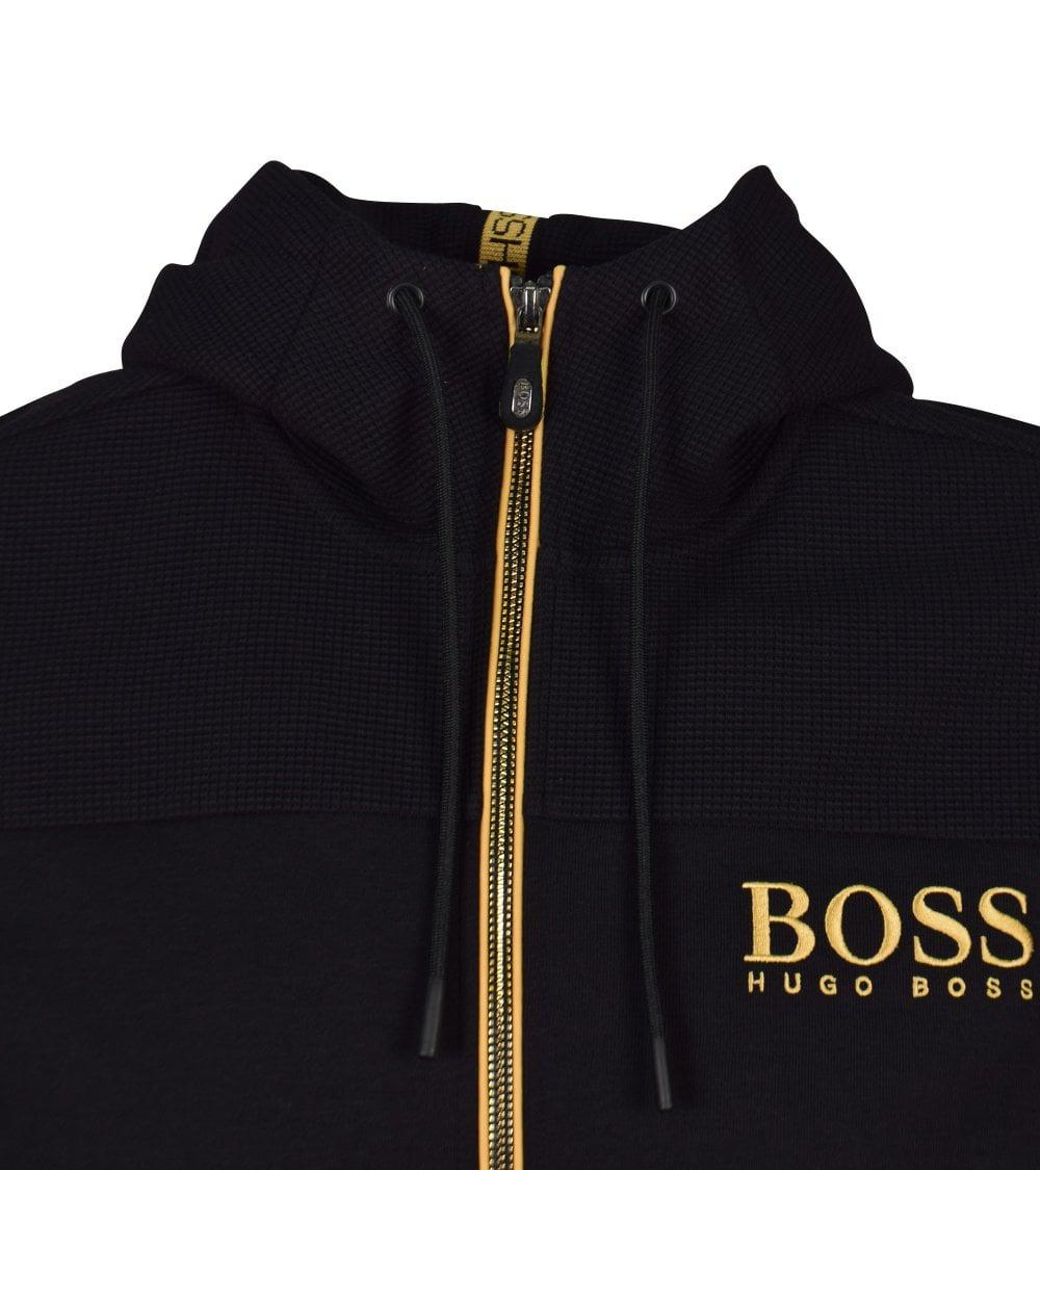 Bergbeklimmer Vijandig Kolibrie BOSS by HUGO BOSS Black/gold Logo Hoodie for Men | Lyst